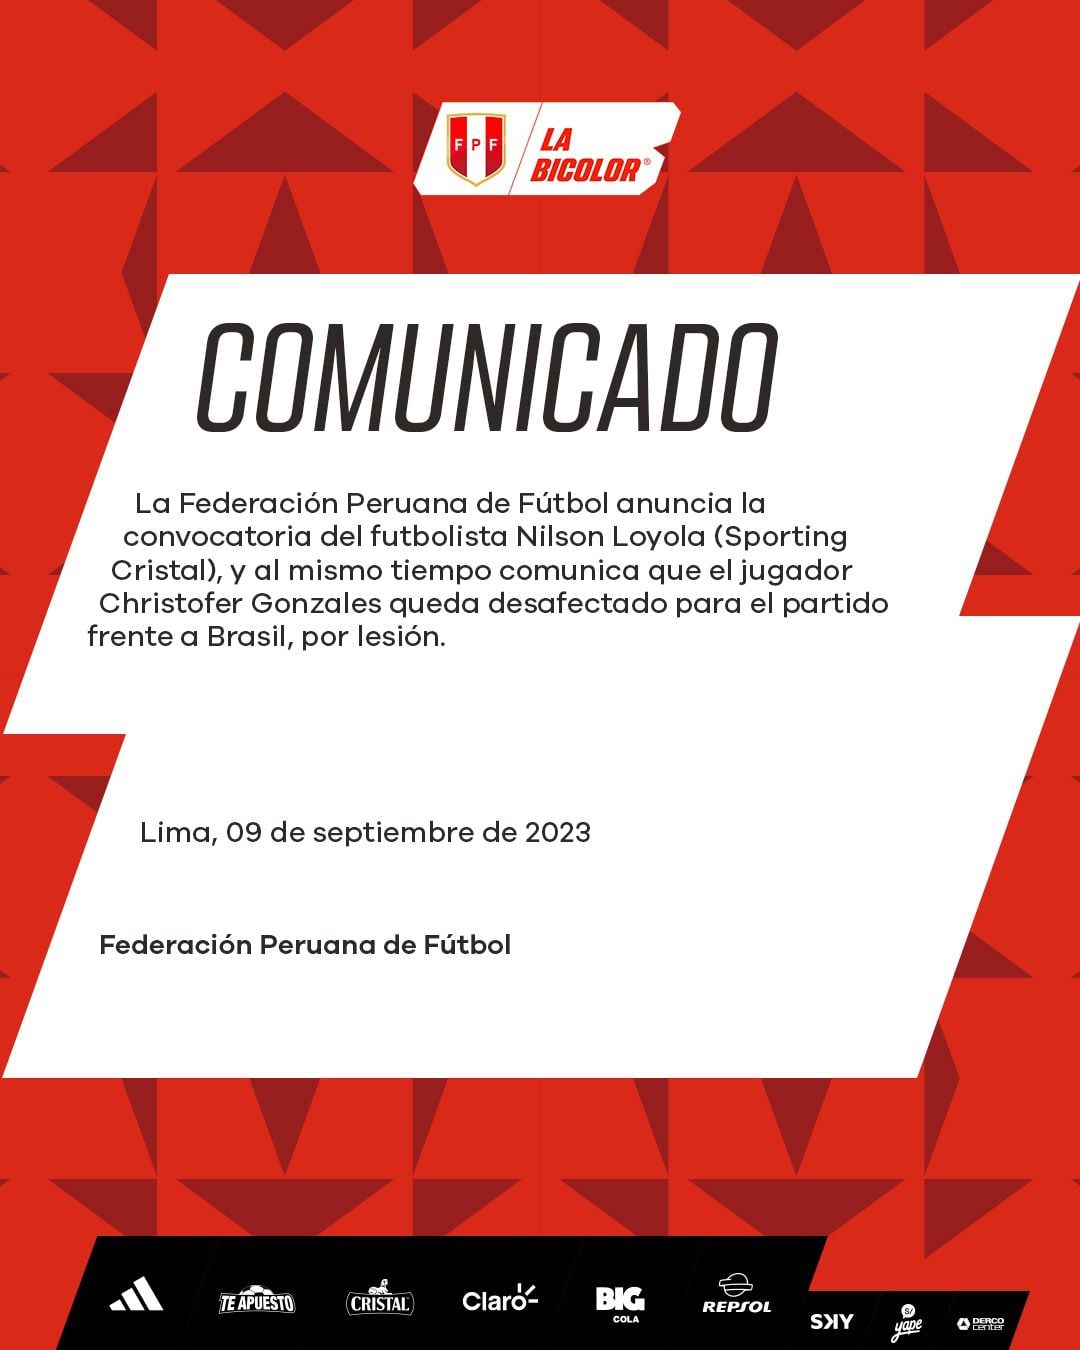 Comunicado de la Federación Peruana de Fútbol confirmando la convocatoria de Nilson Loyola.